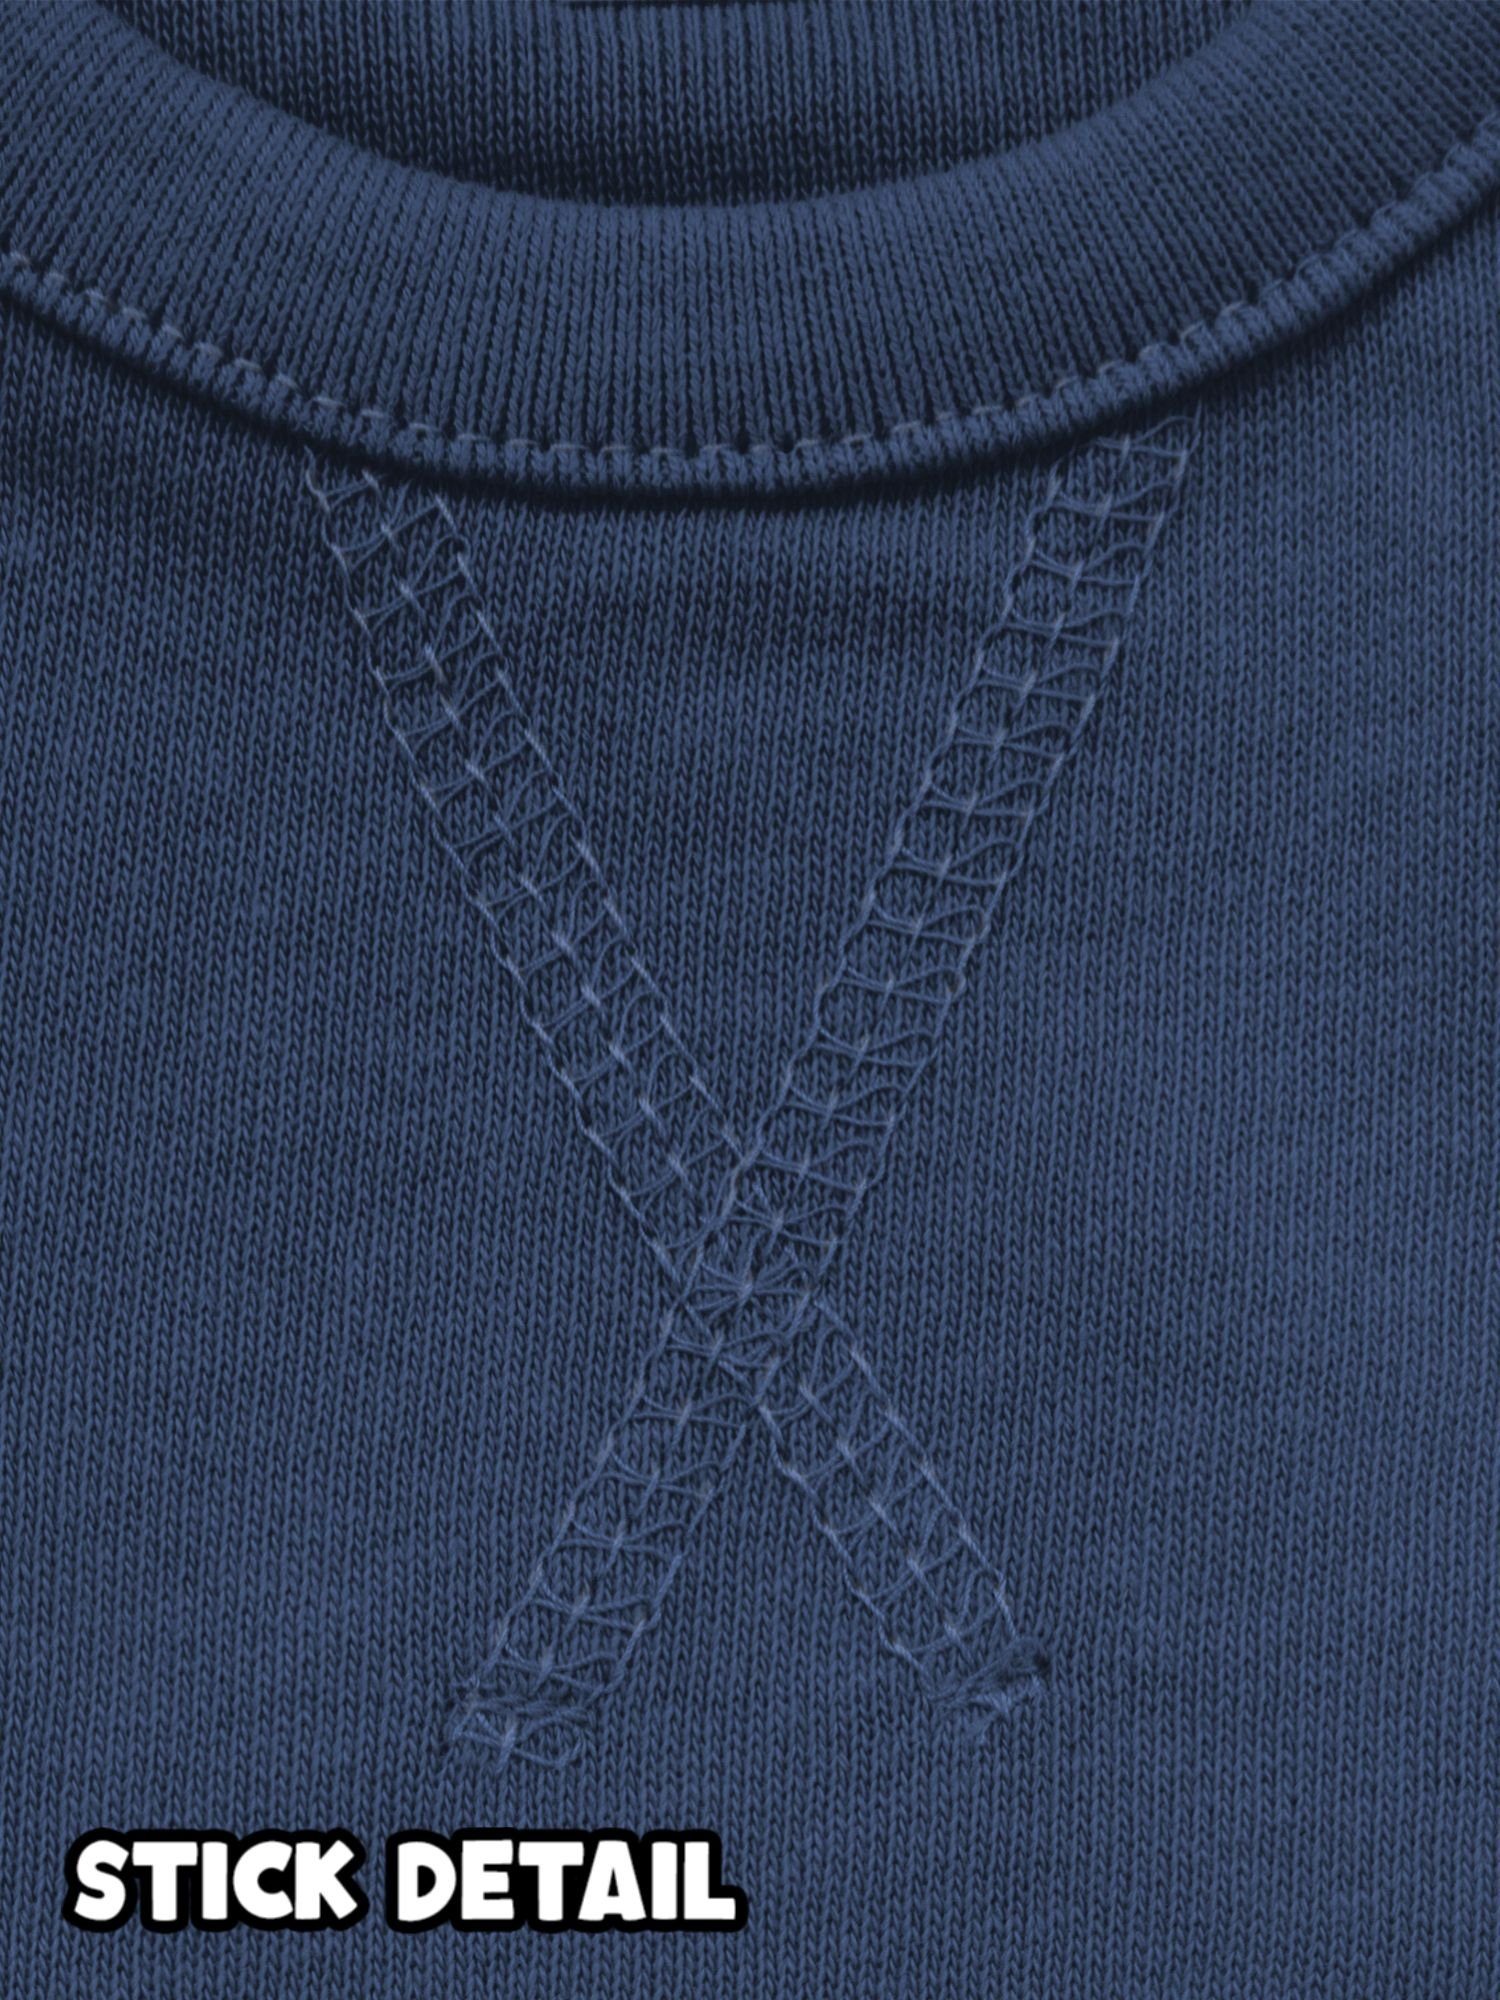 Shirtracer Sweatshirt süßer Elch Weihnachten Kleidung Navy Blau Baby 1